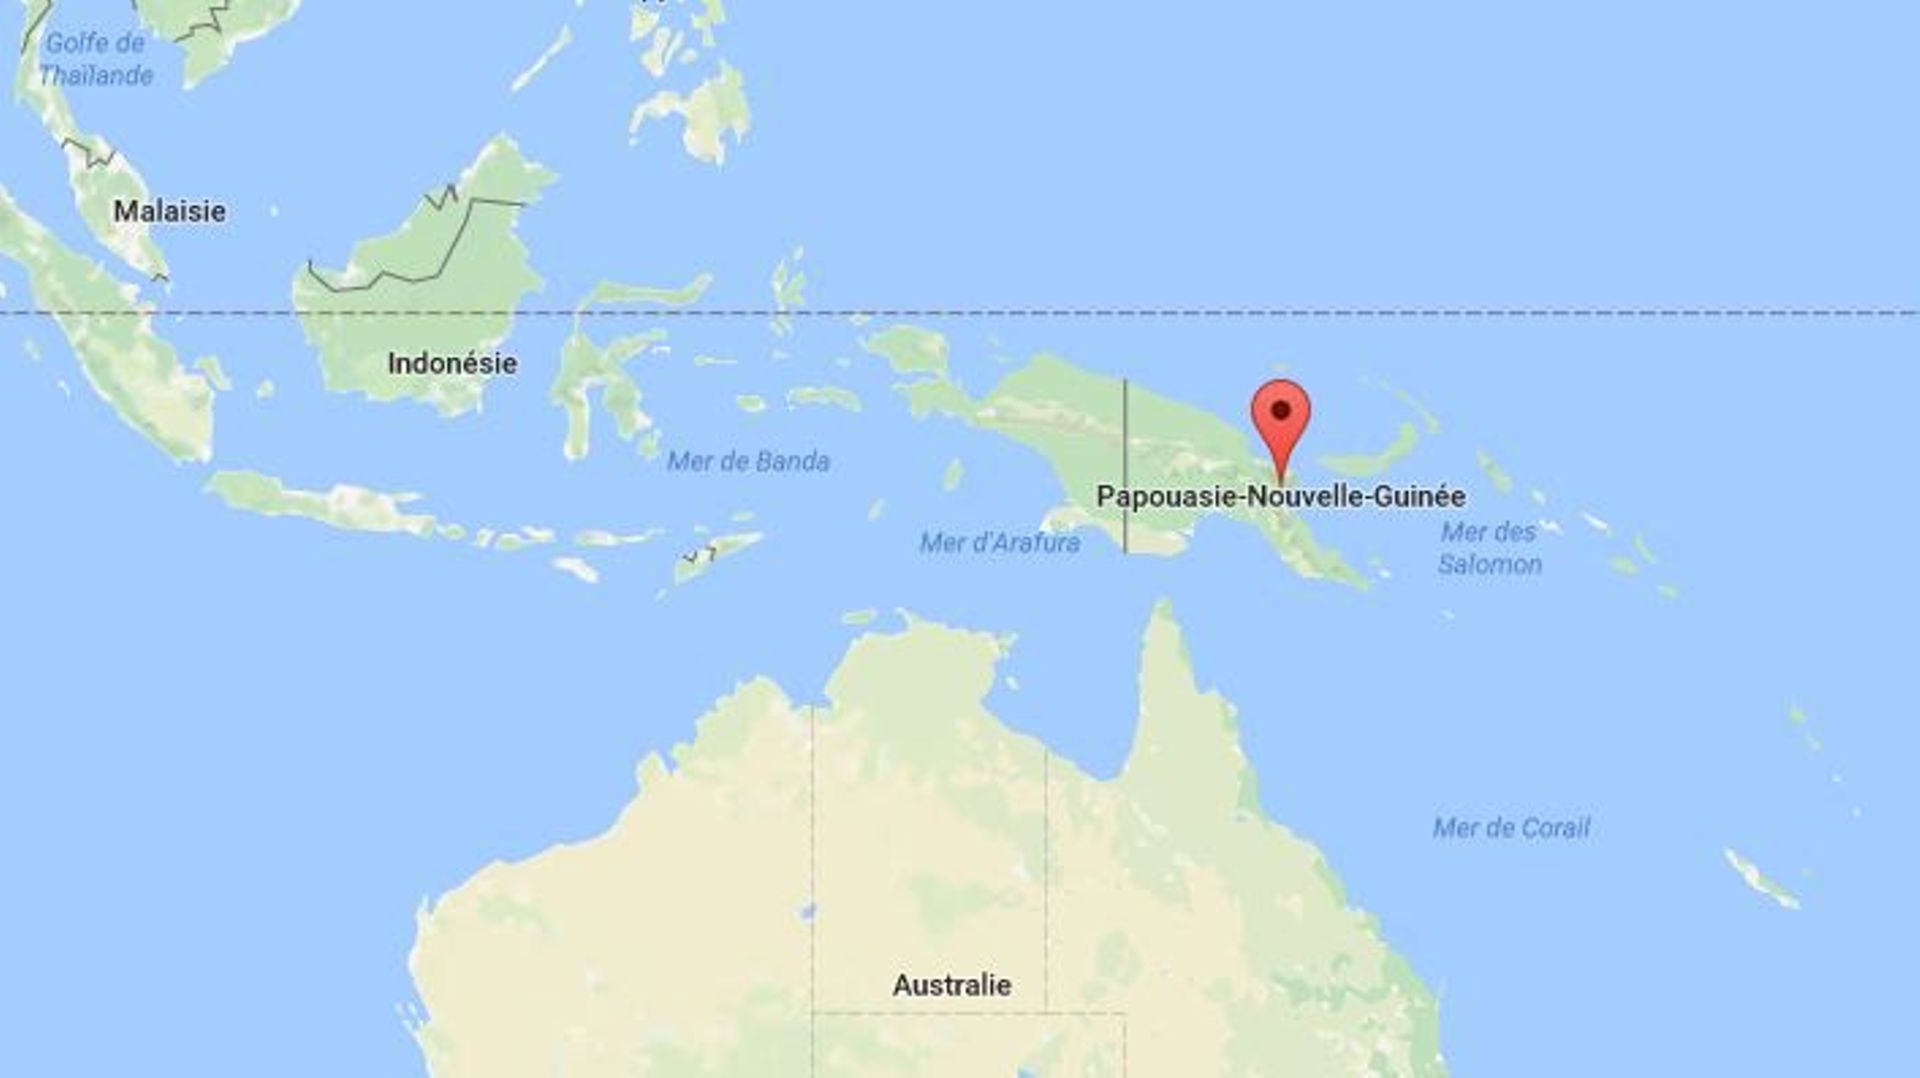 Papouasie-Nouvelle-Guinée: 17 détenus abattus lors d'une évasion massive